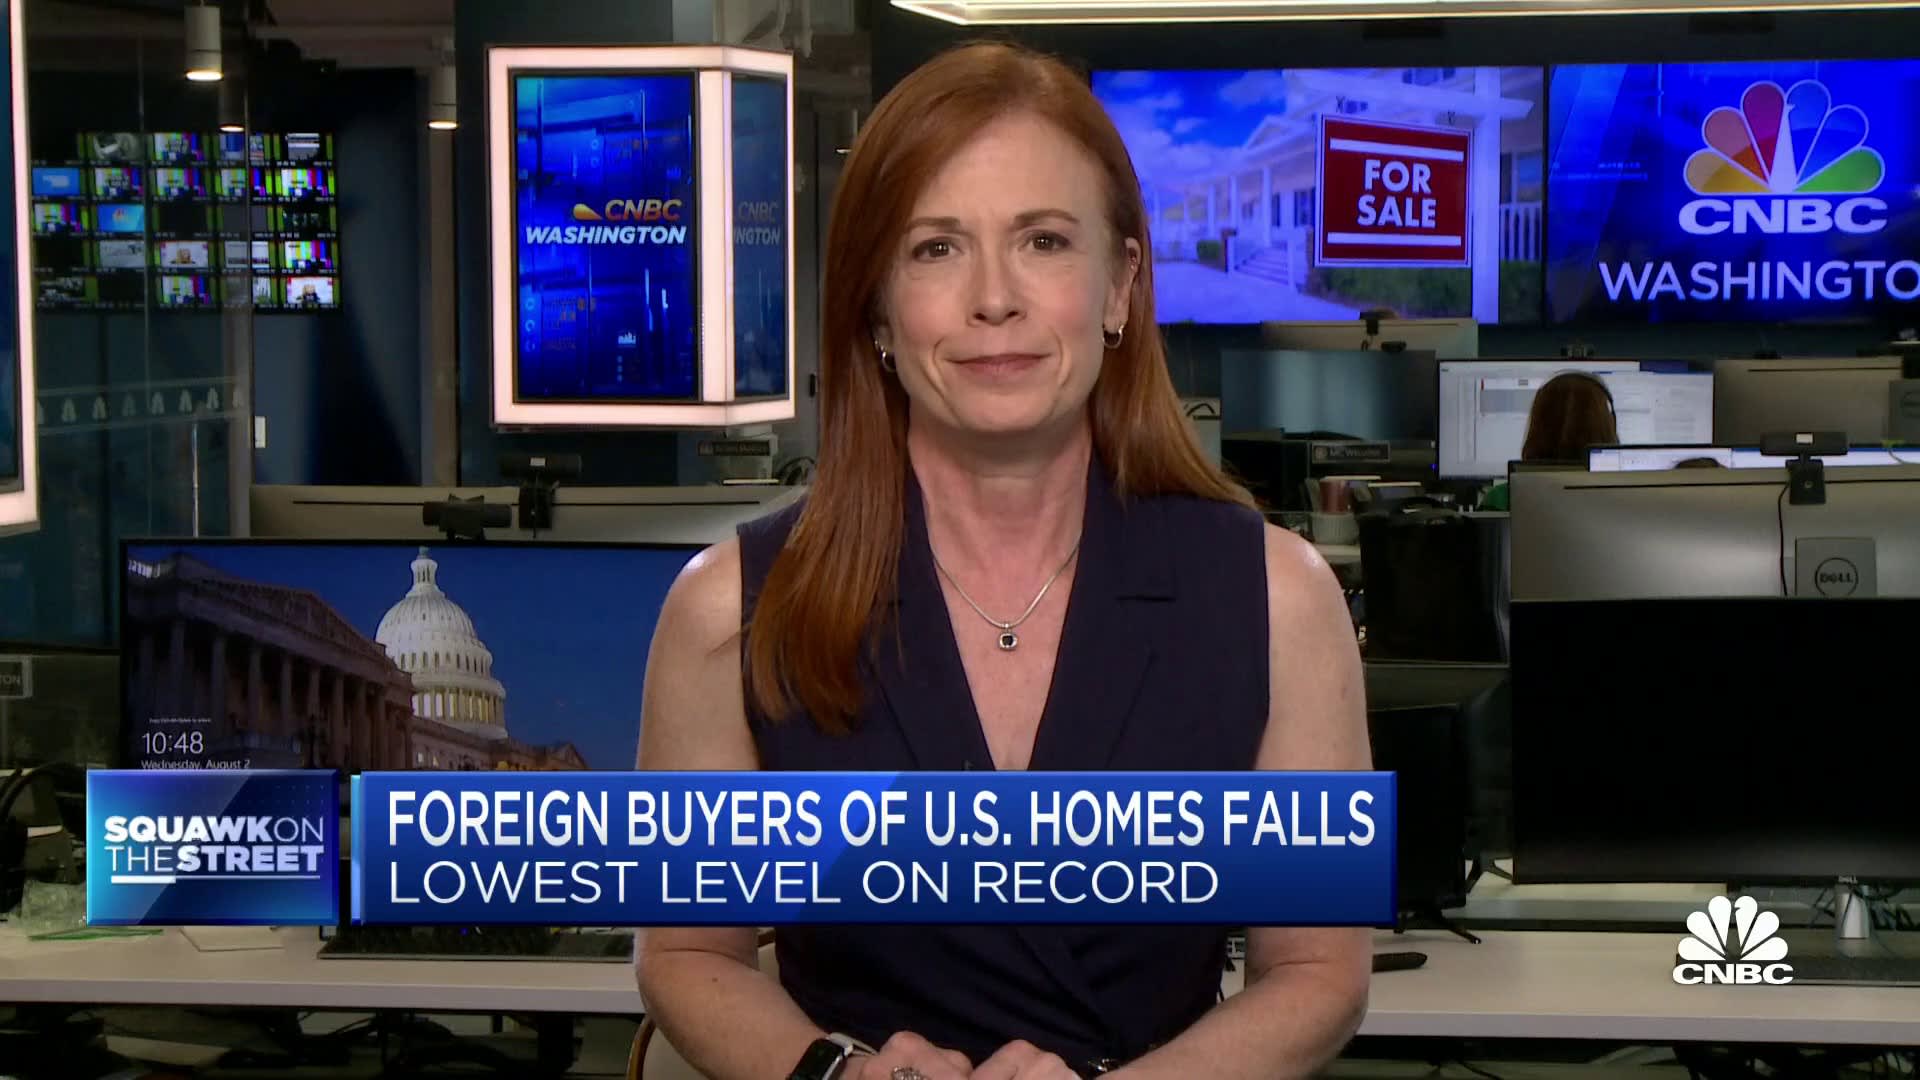 Compradores estrangeiros de casas nos EUA caem para o nível mais baixo já registrado